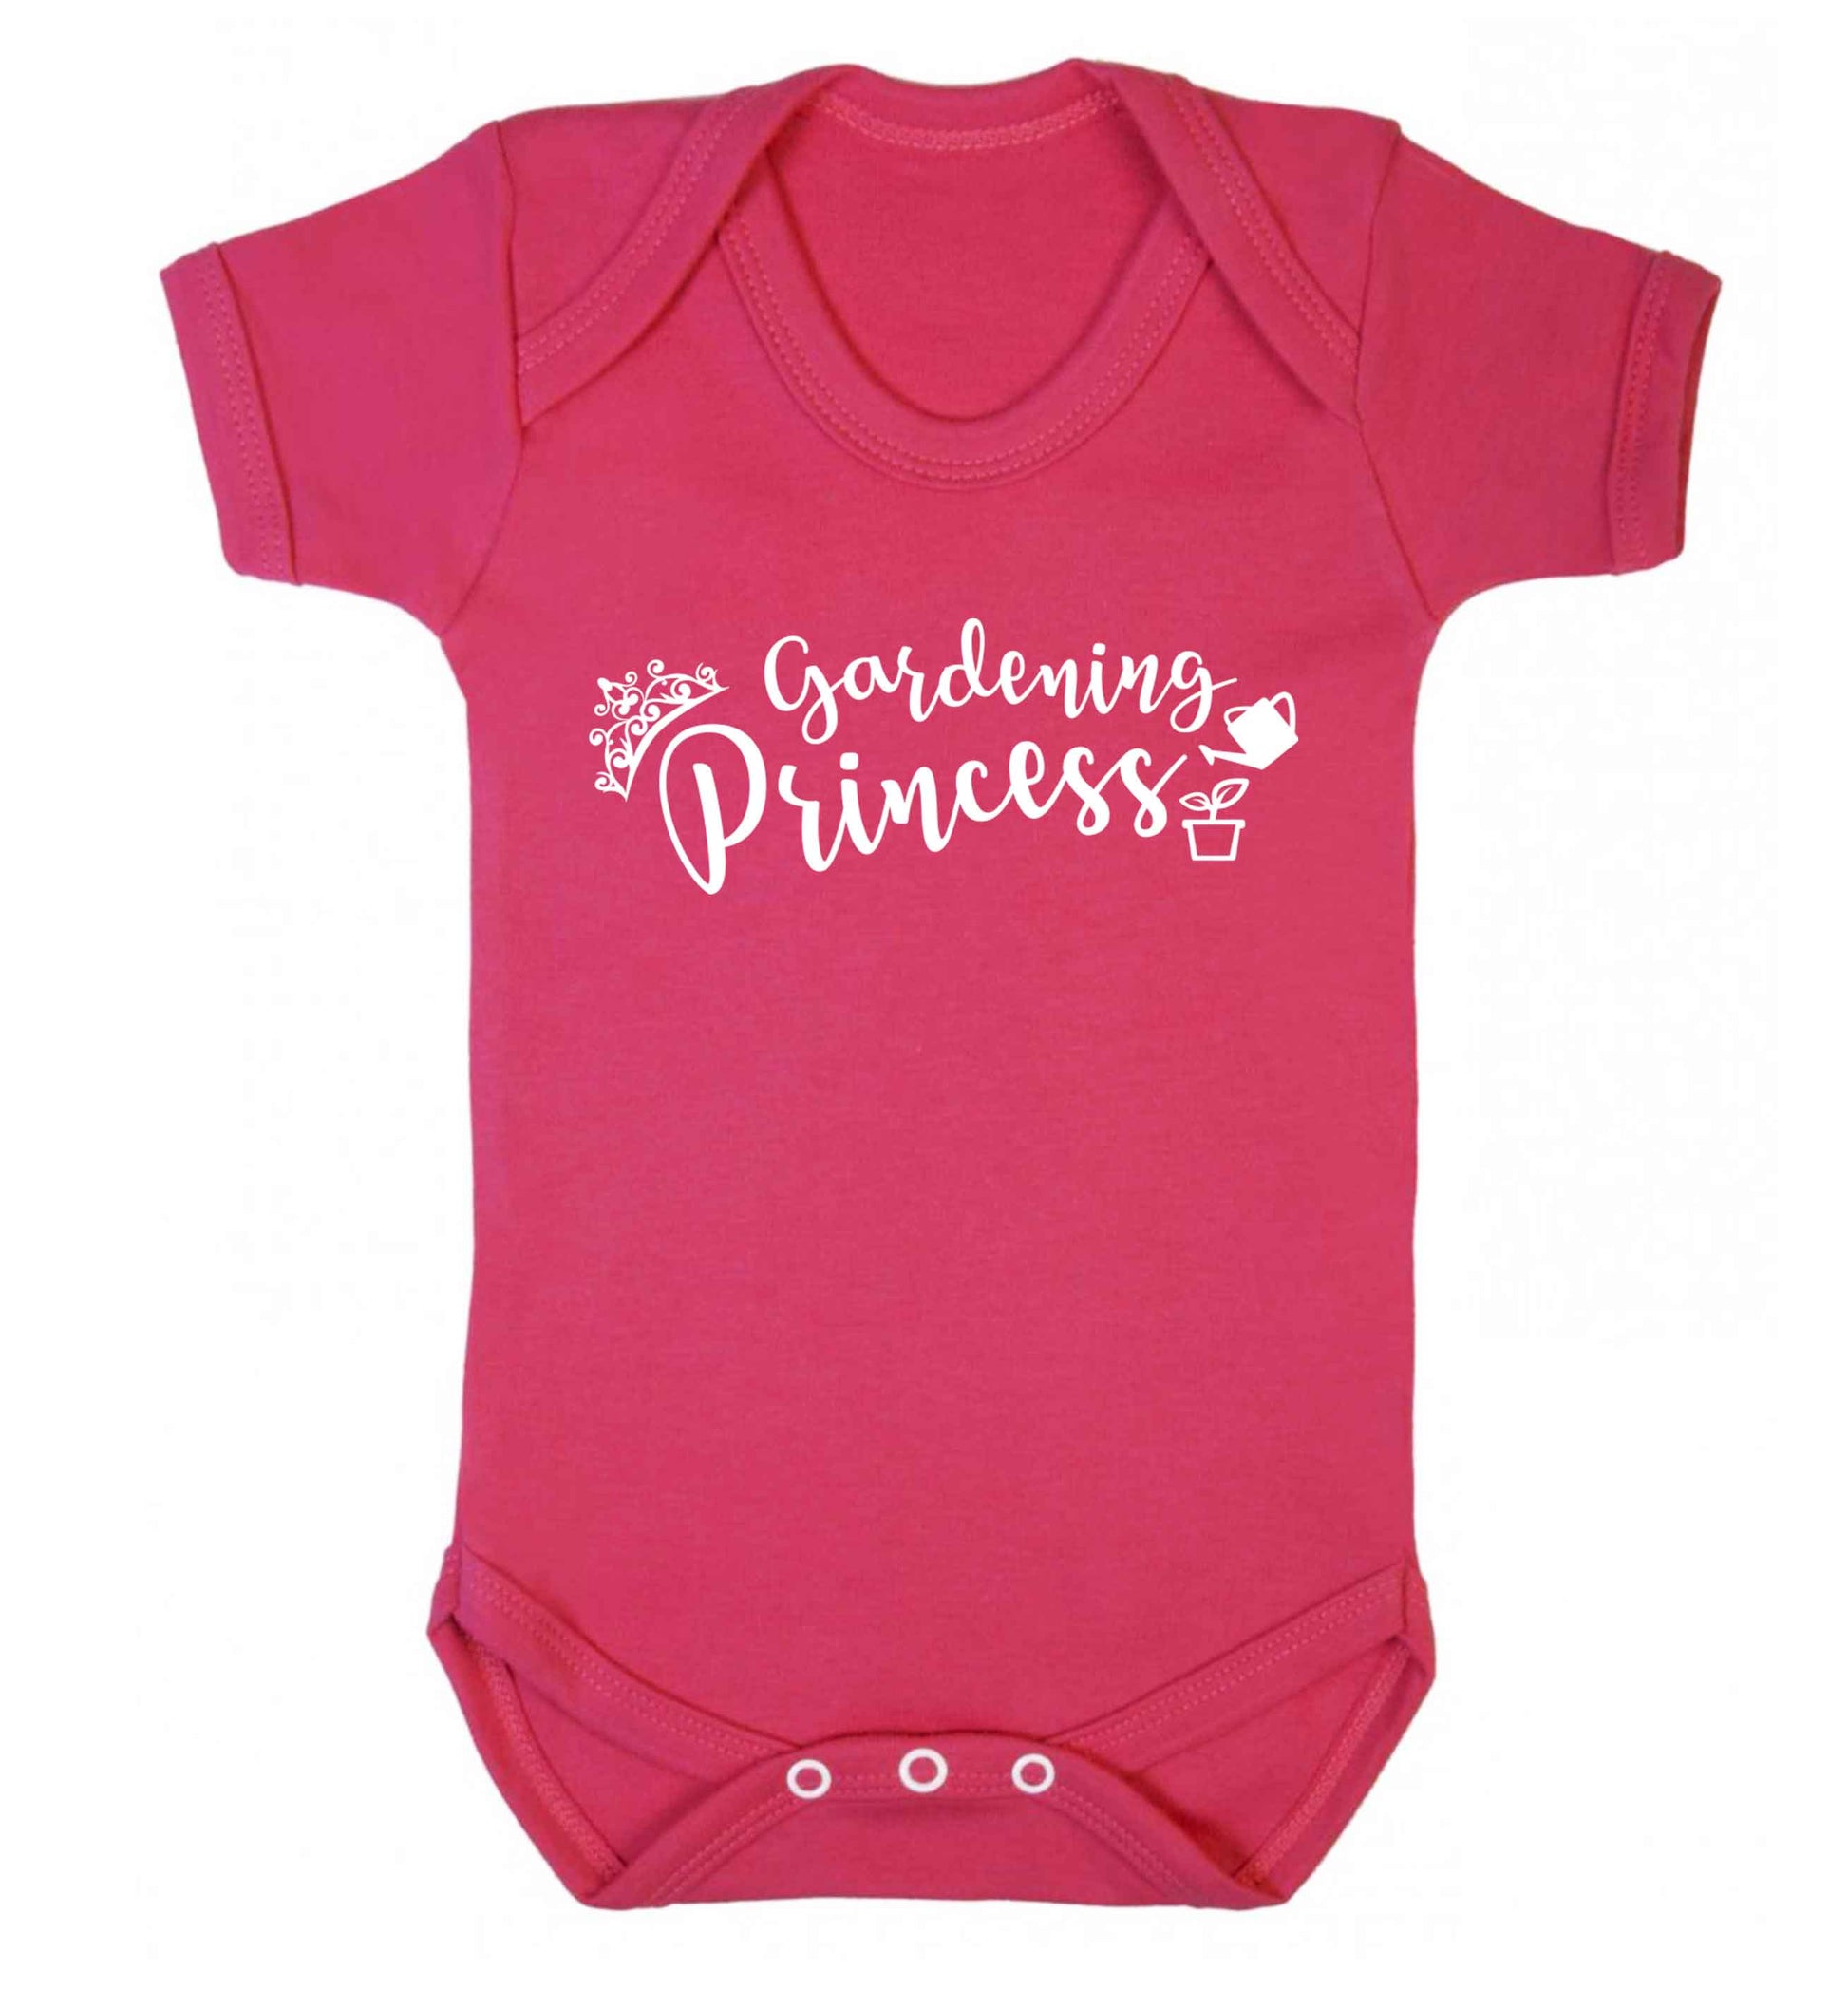 Gardening princess Baby Vest dark pink 18-24 months